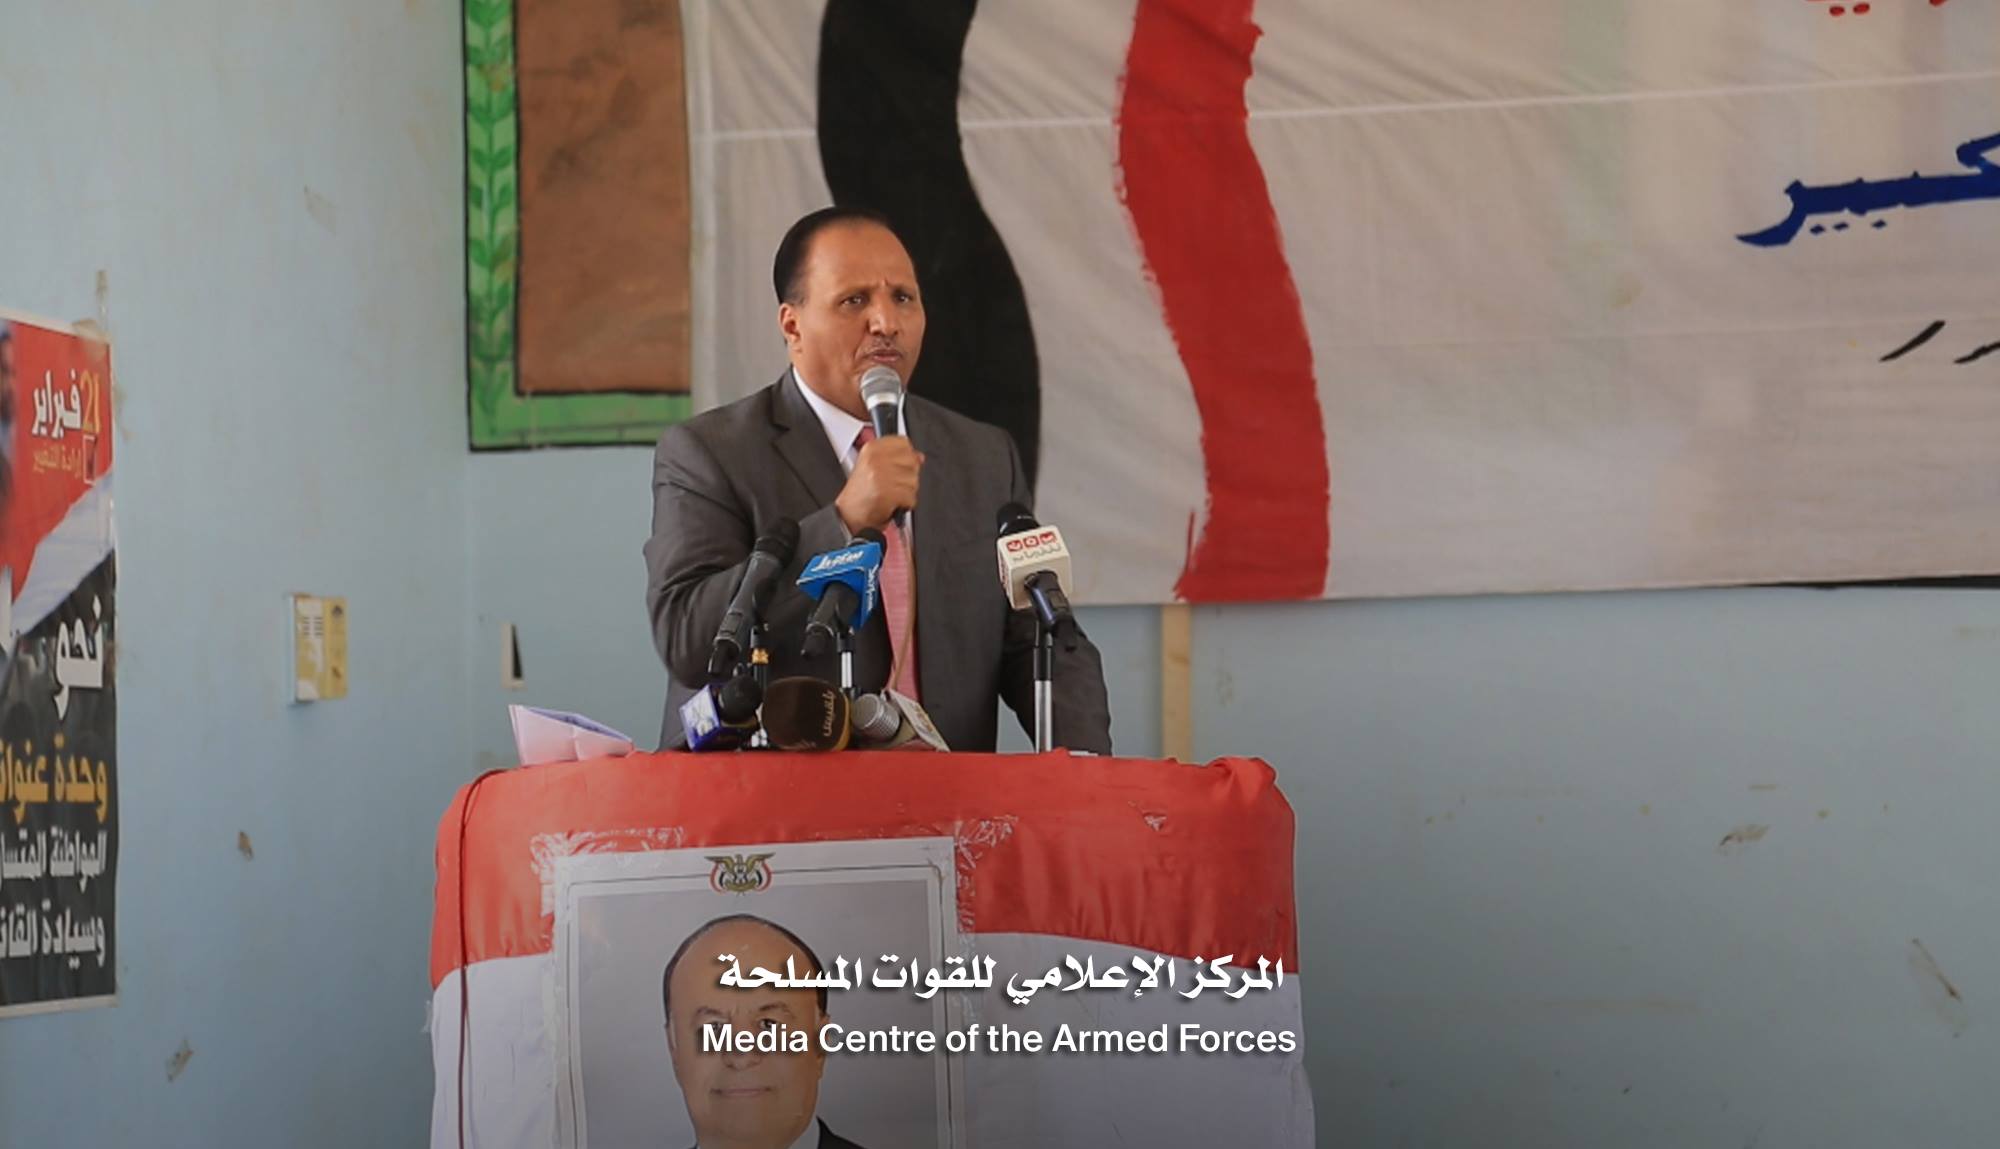 جباري: لا بد أن تحسم المعركة لصالح الدولة ولن يقبل الشعب اليمني على نفسه الذل في وجود المليشيات (صور)